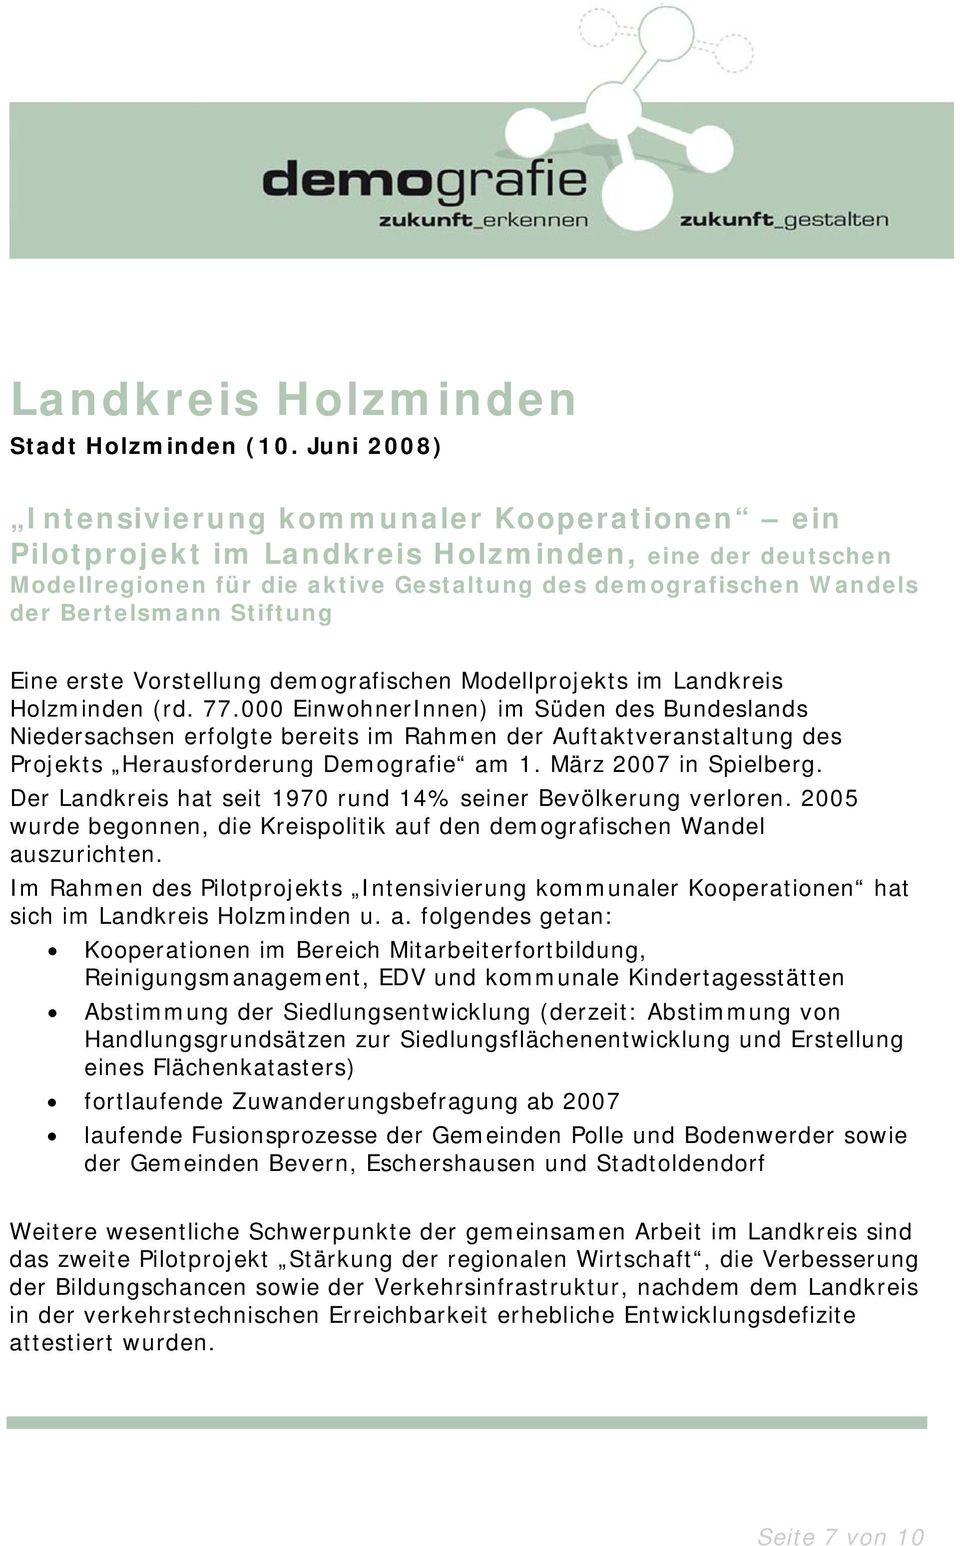 Stiftung Eine erste Vorstellung demografischen Modellprojekts im Landkreis Holzminden (rd. 77.